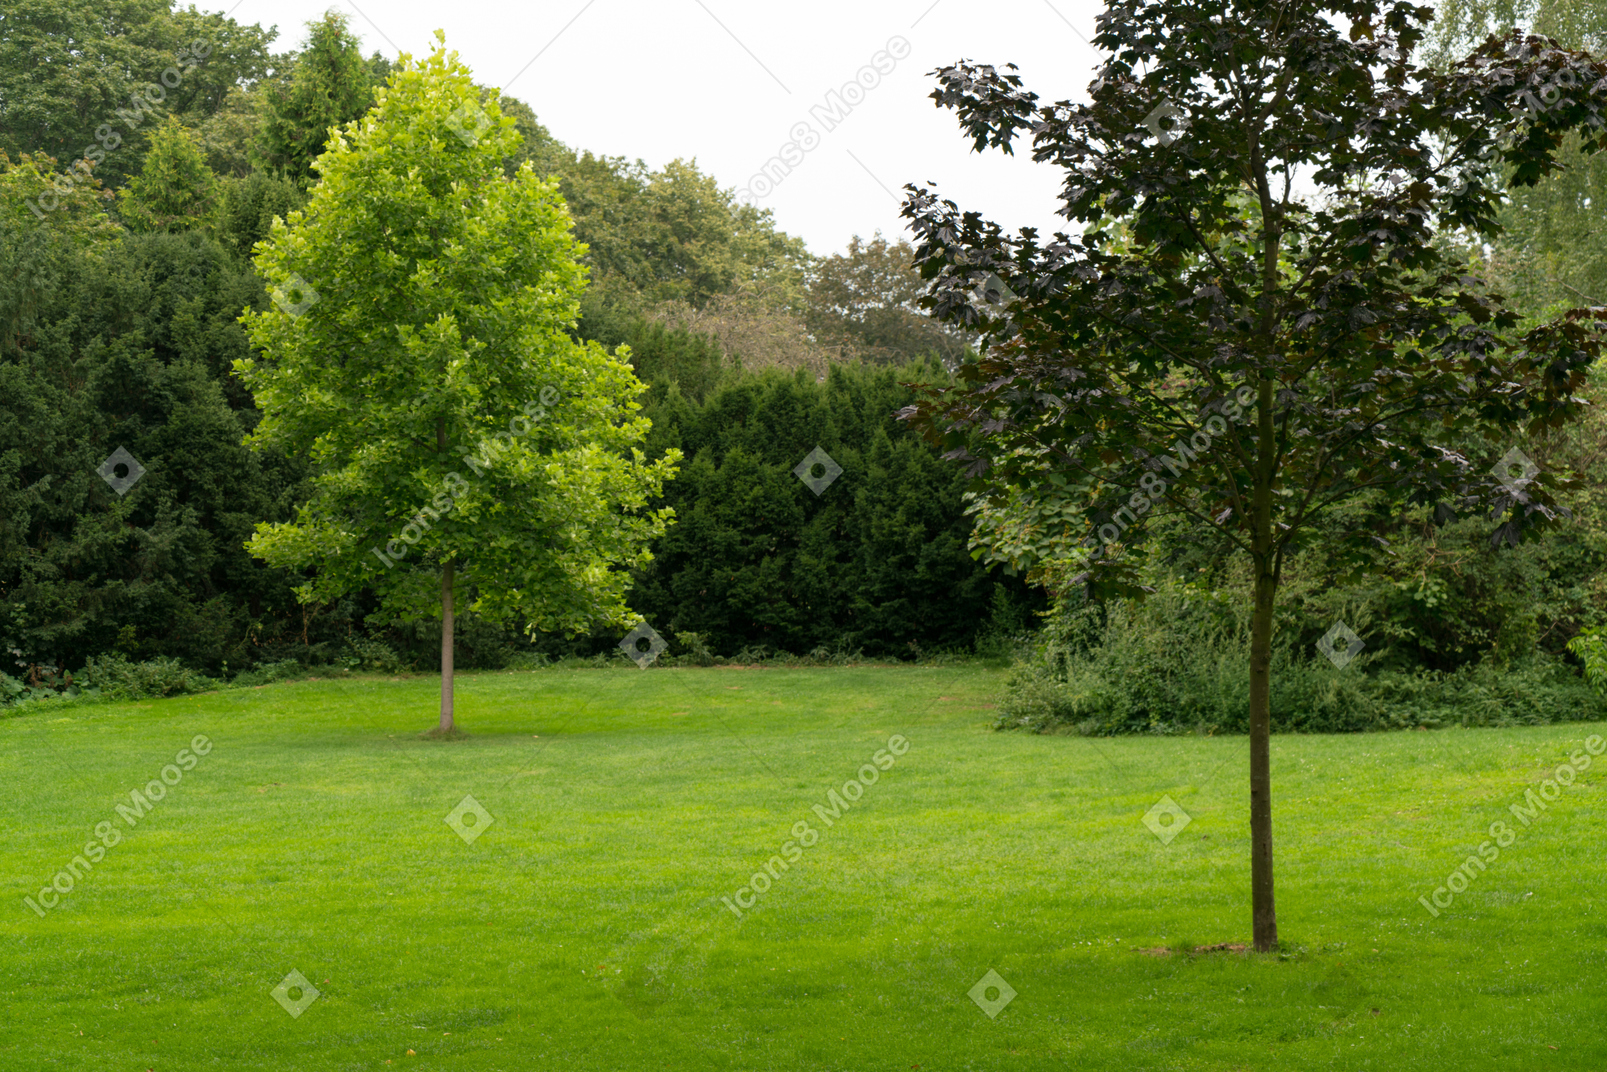 Schöne aussicht auf einen grünen rasen mit bäumen